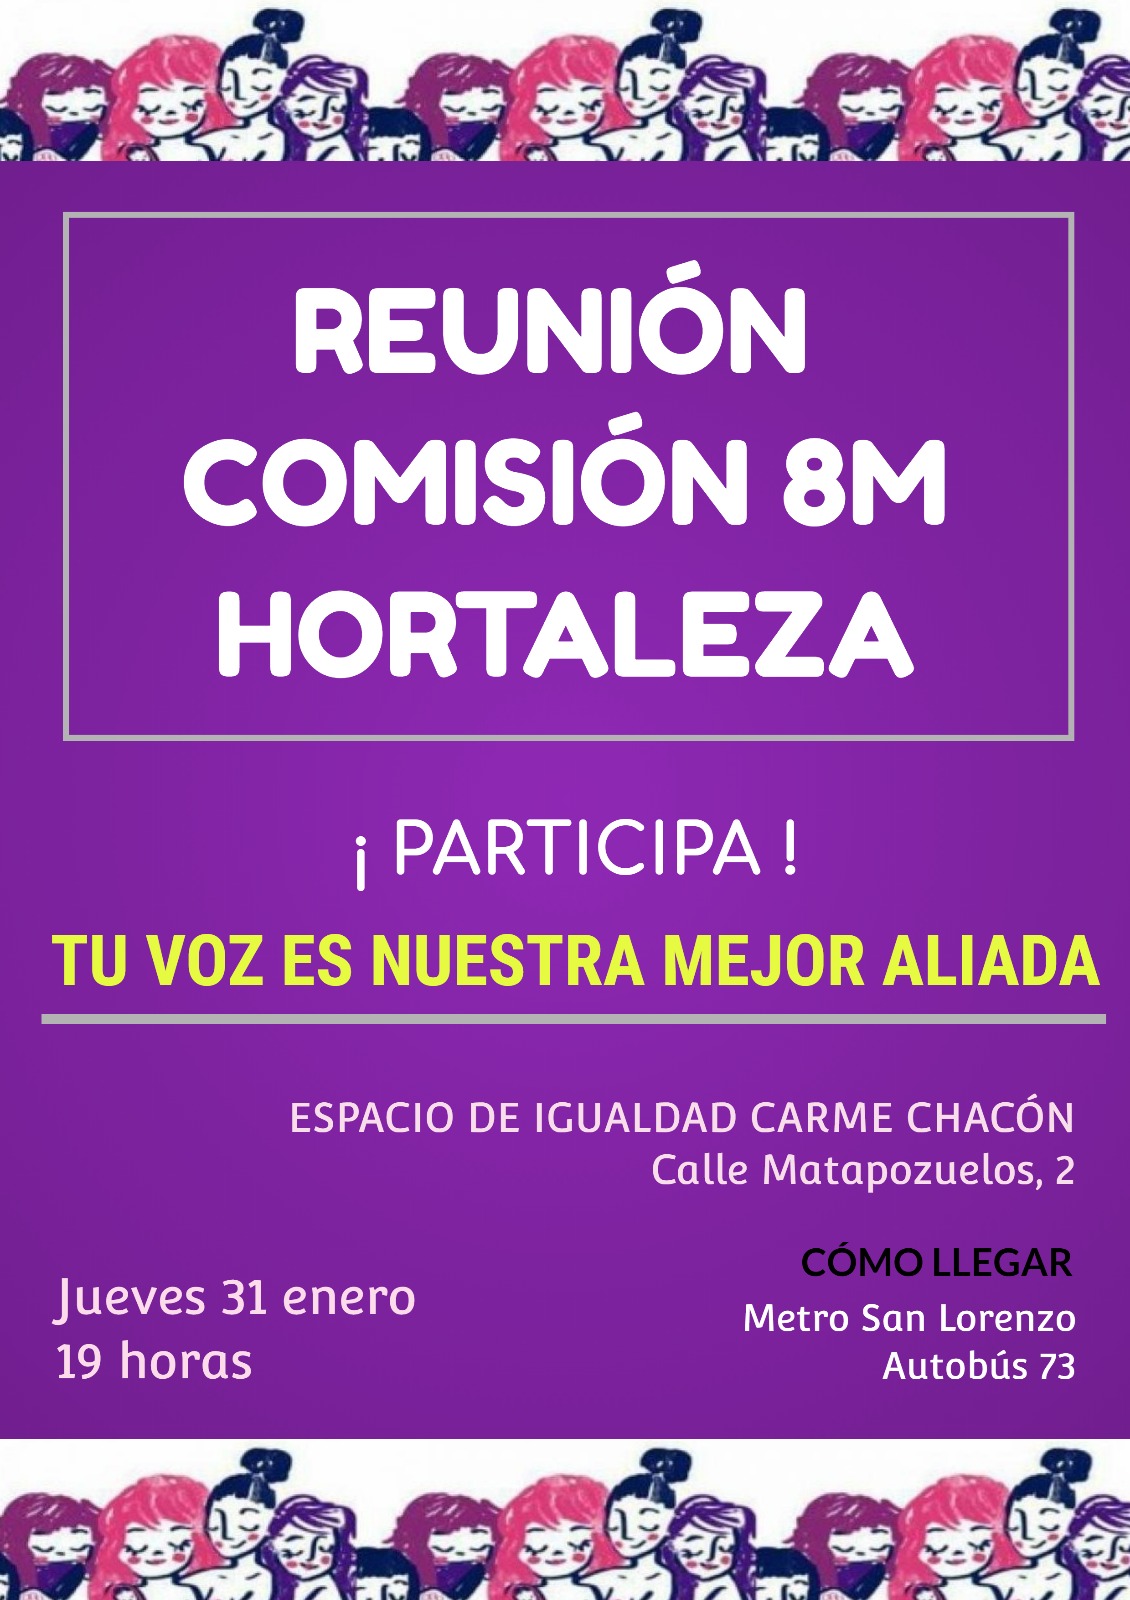 Reunión de la Comisión 8M Hortaleza en el Espacio de Igualdad Carme Chacón